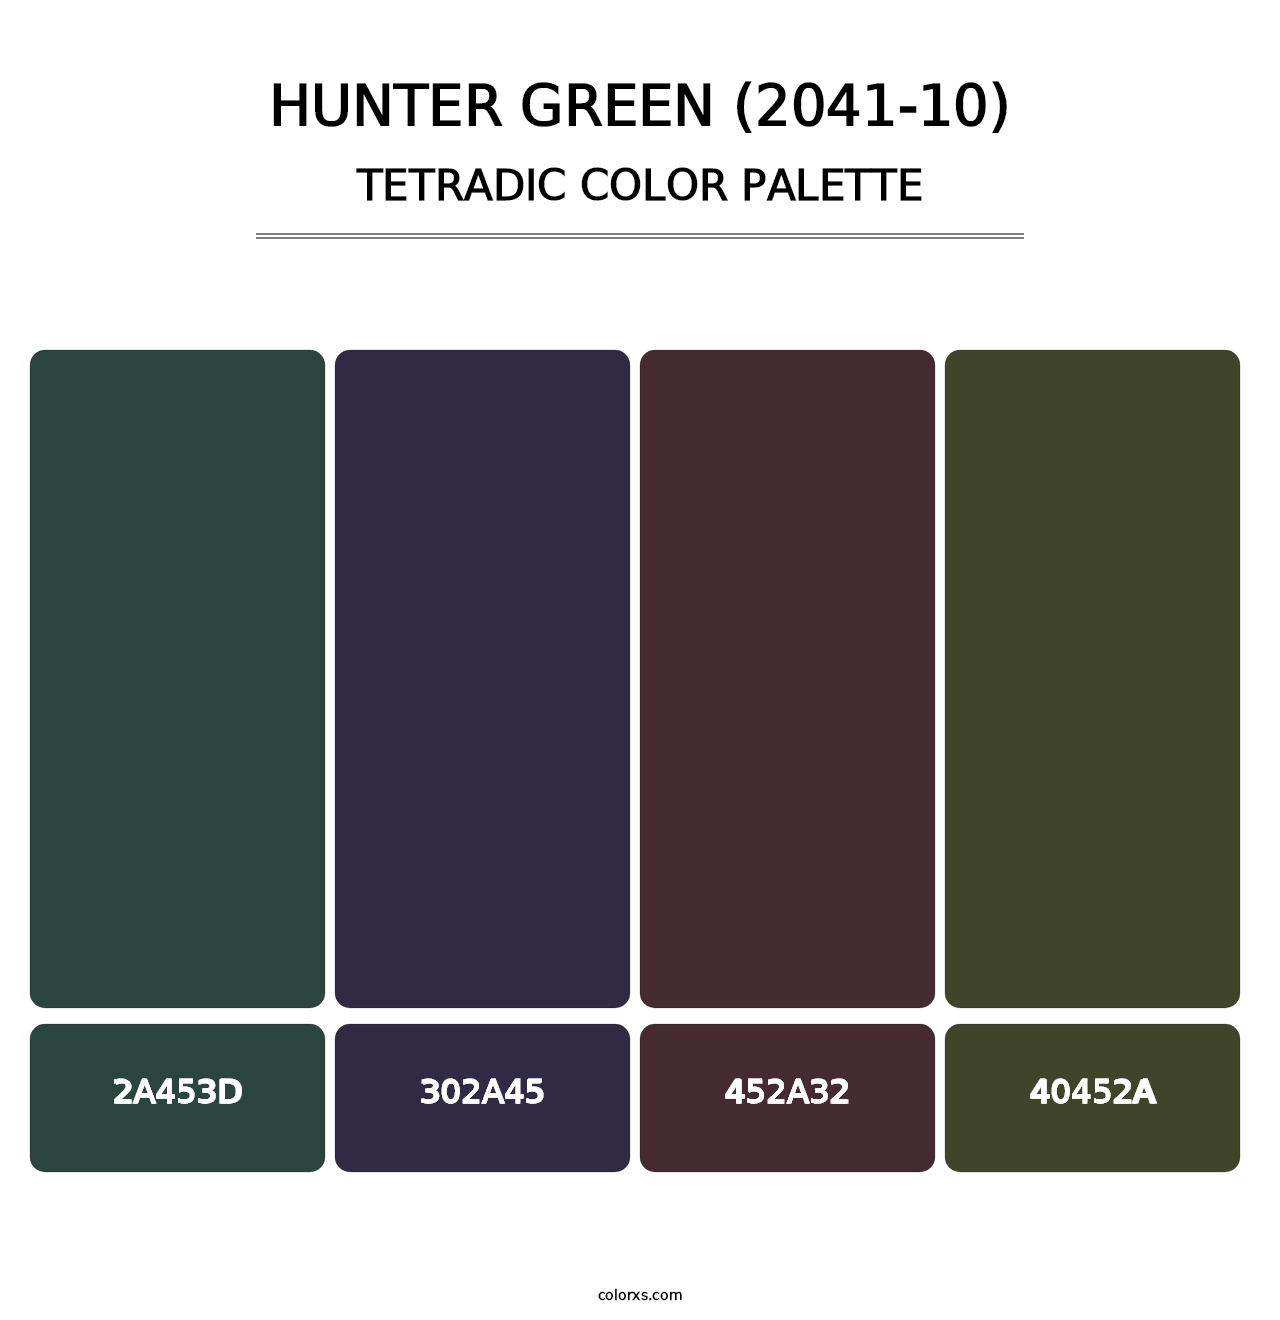 Hunter Green (2041-10) - Tetradic Color Palette